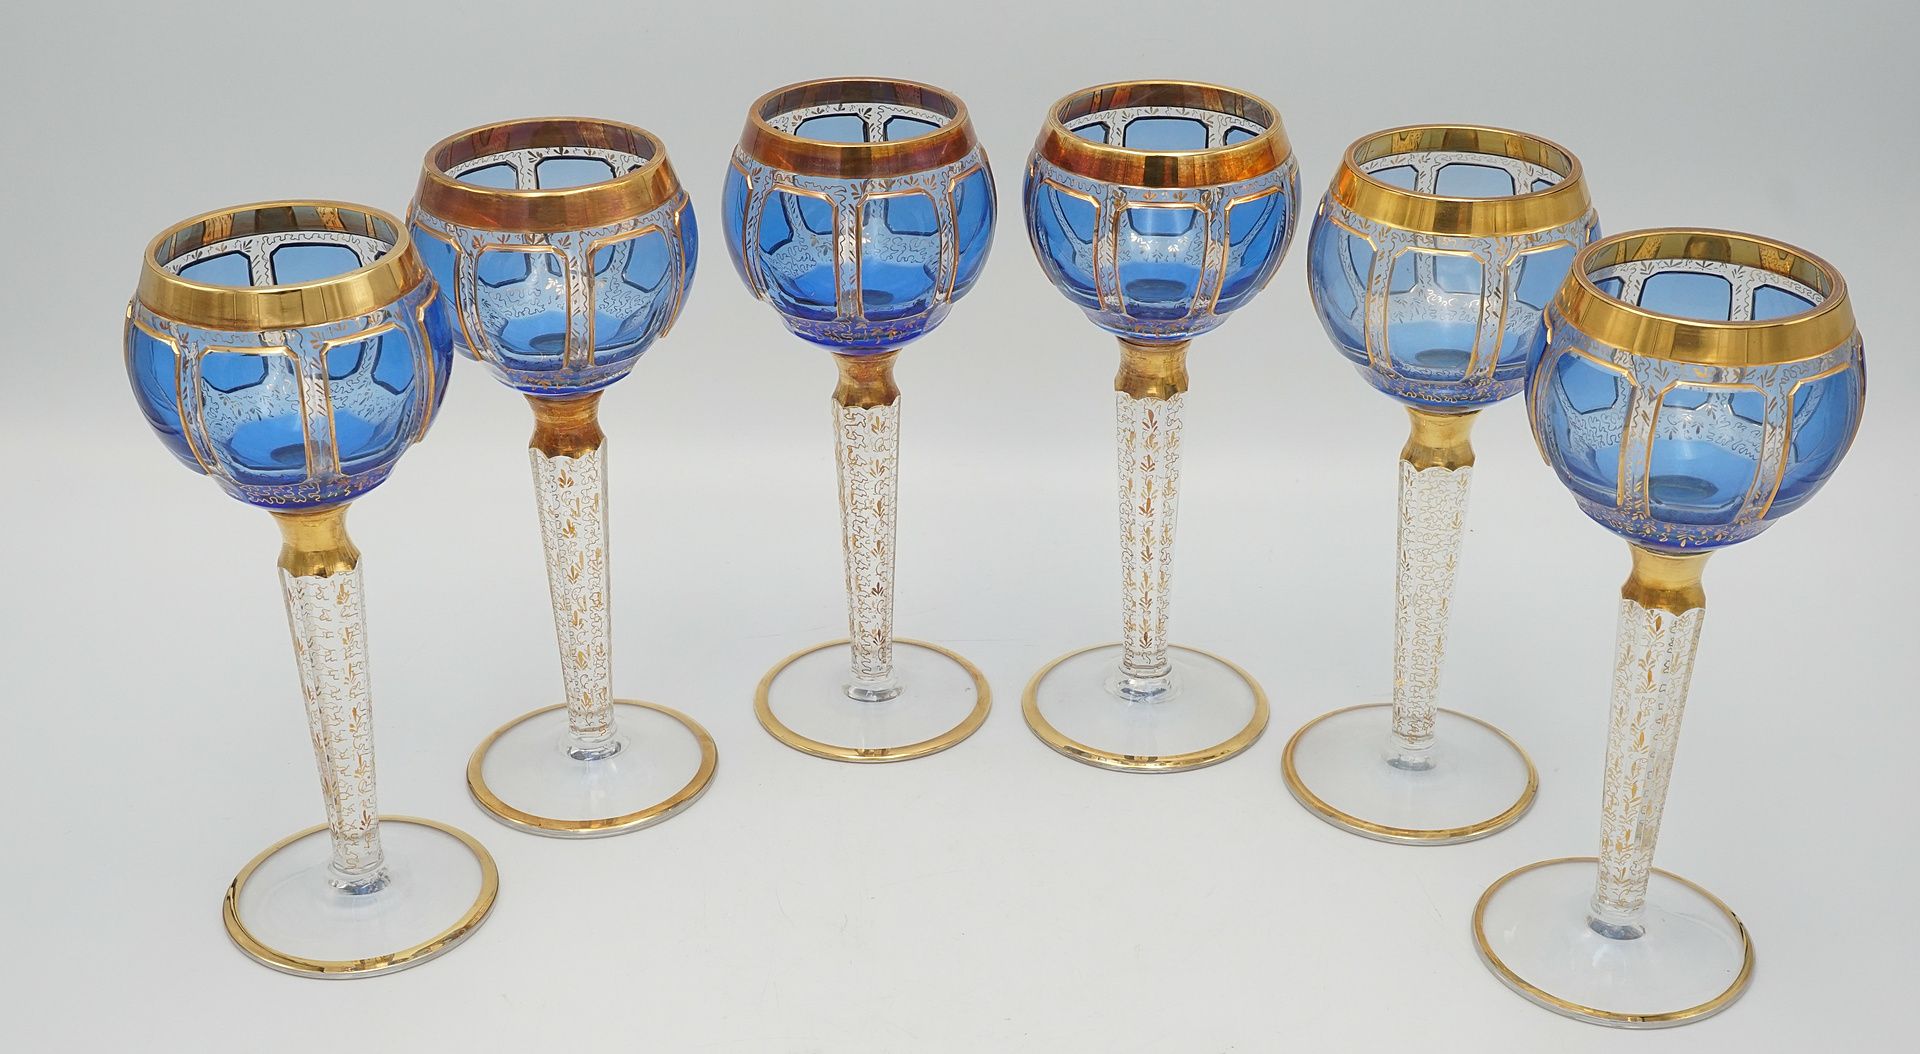 Six probably Steiner & Vogel Vohenstrauss magnificent wine glasses, around 1930 - Image 3 of 4